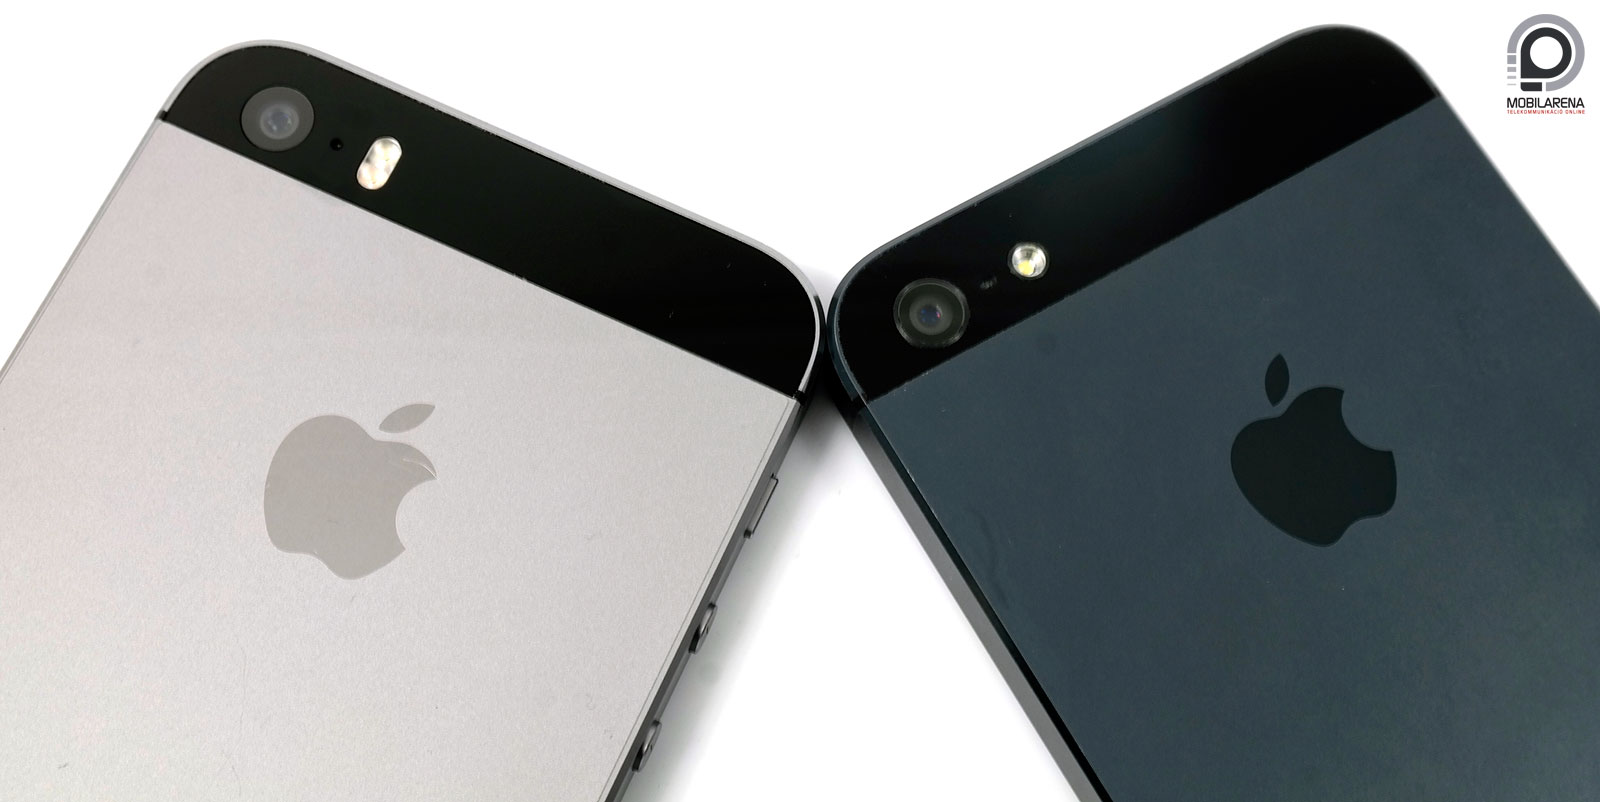 Apple iPhone 5s - tud ujjat mutatni - Mobilarena Okostelefon teszt -  Nyomtatóbarát verzió